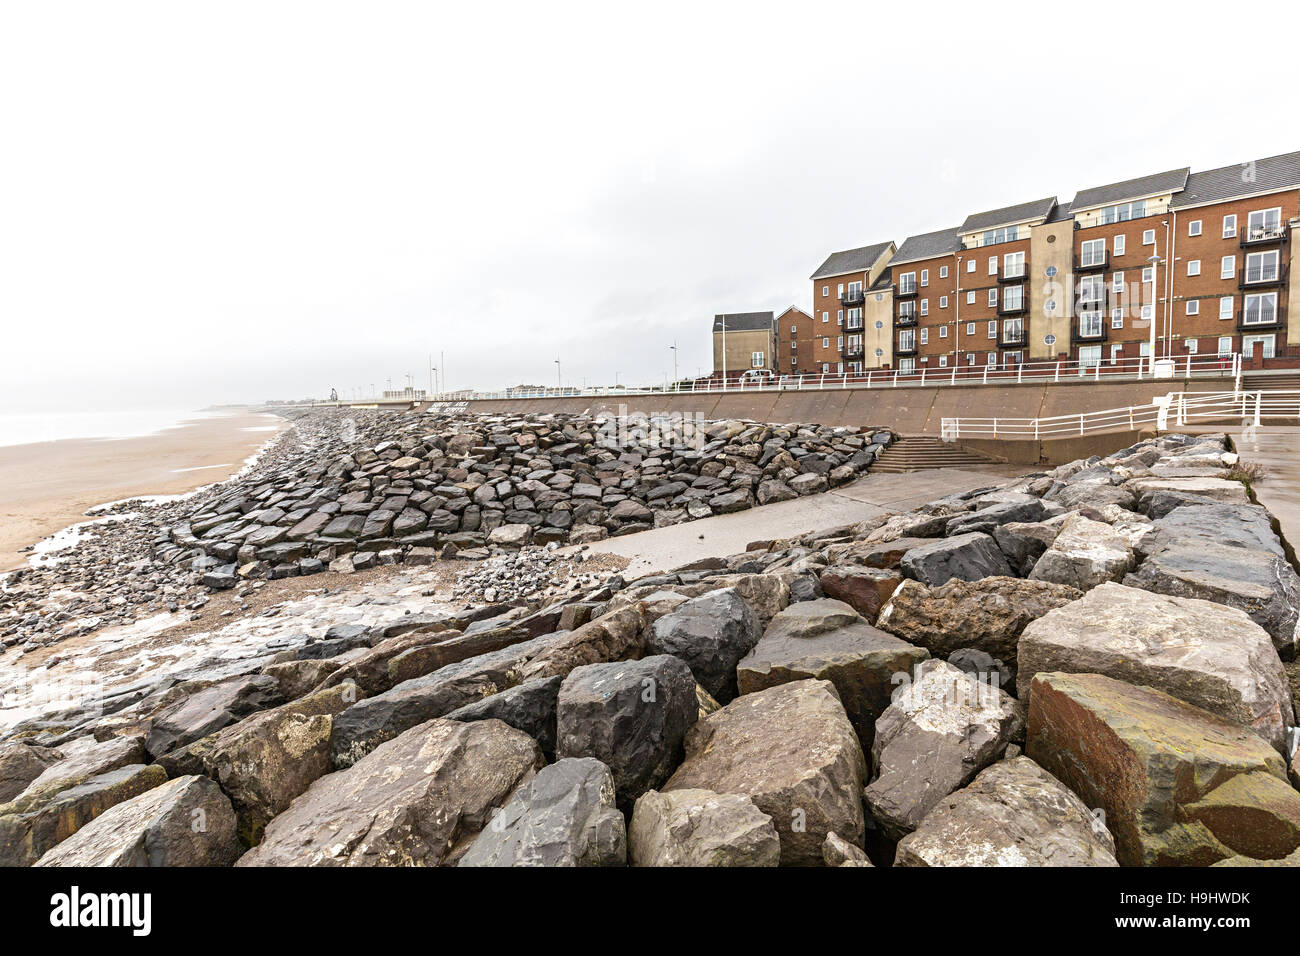 Plage et de protection de la rive avec de grosses roches en face de maisons du front de mer, Aberavon, Pays de Galles, Royaume-Uni Banque D'Images